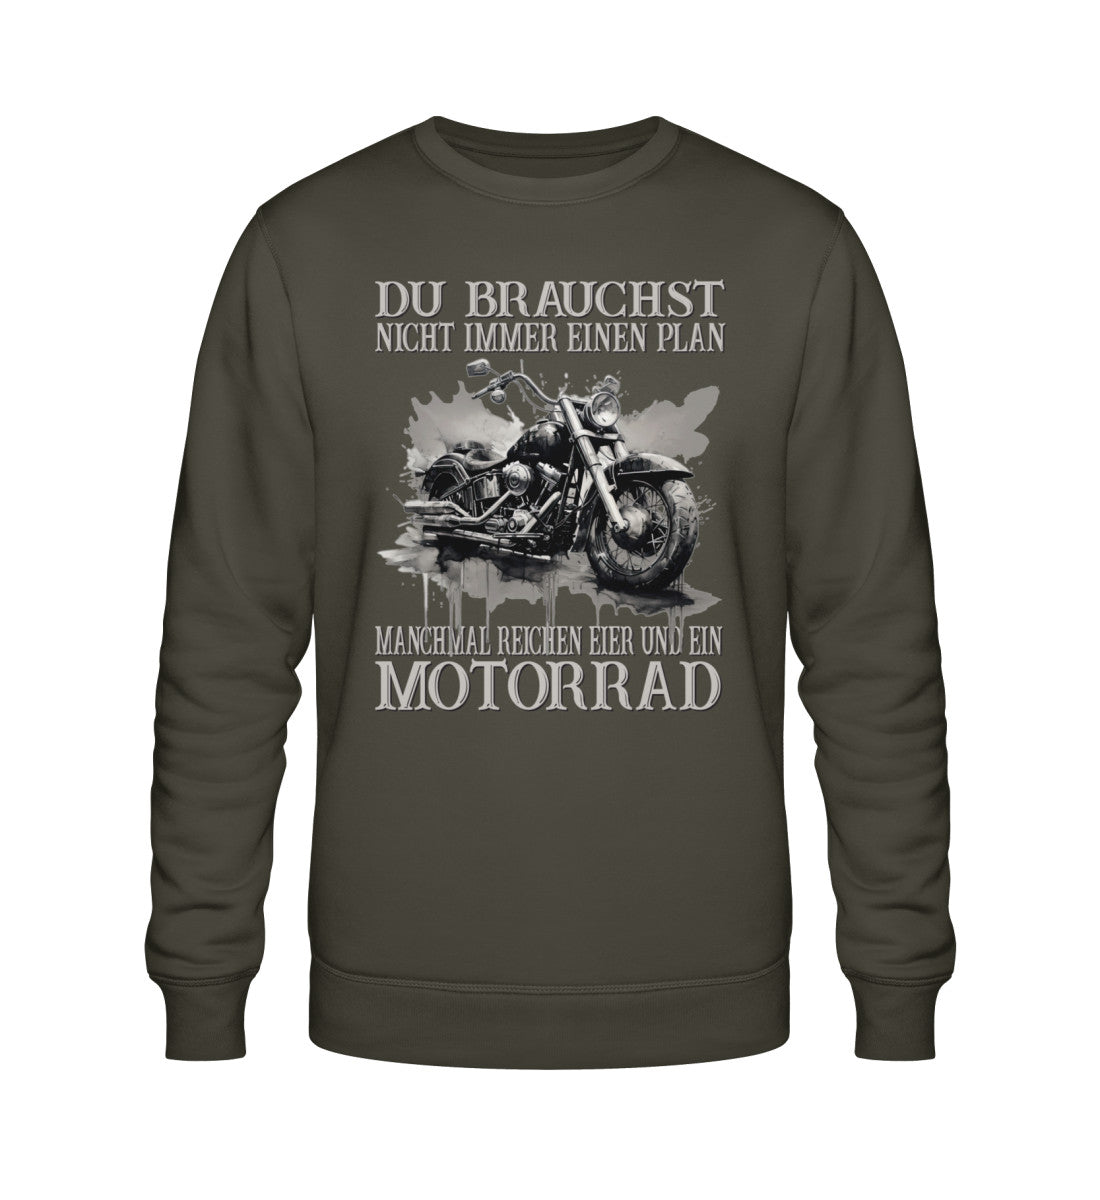 Ein Sweatshirt für Motorradfahrer von Wingbikers mit dem Aufdruck, Du brauchst nicht immer einen Plan - Manchmal reichen Eier und ein Motorrad, in khaki grün.